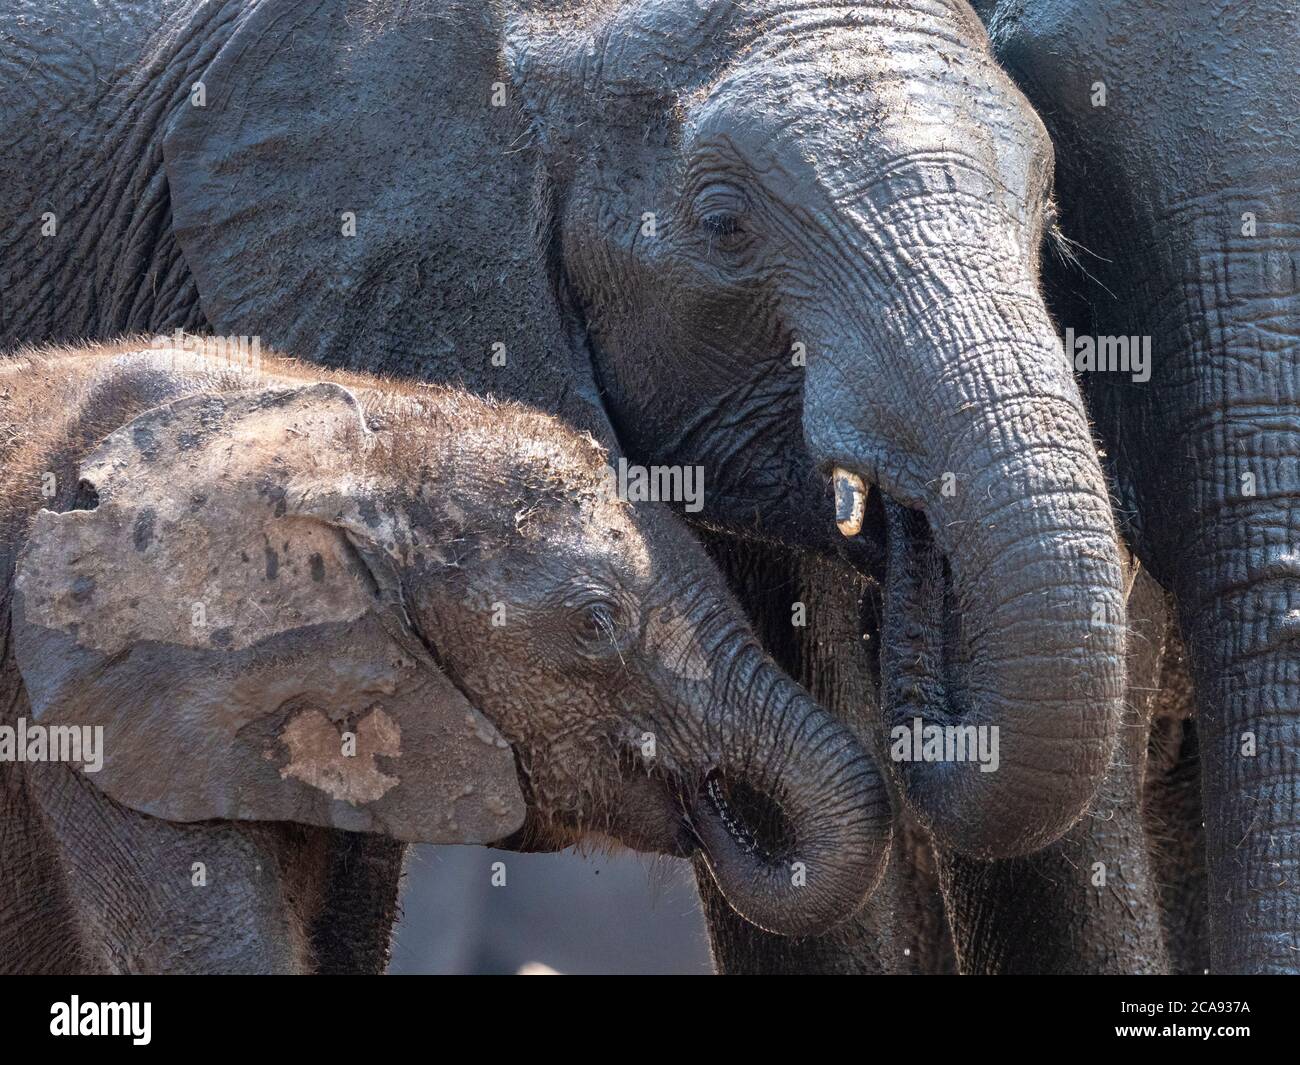 Mère et veau d'éléphant de brousse africain (Loxodonta africana) dans le parc national de Hwange, Zimbabwe, Afrique Banque D'Images